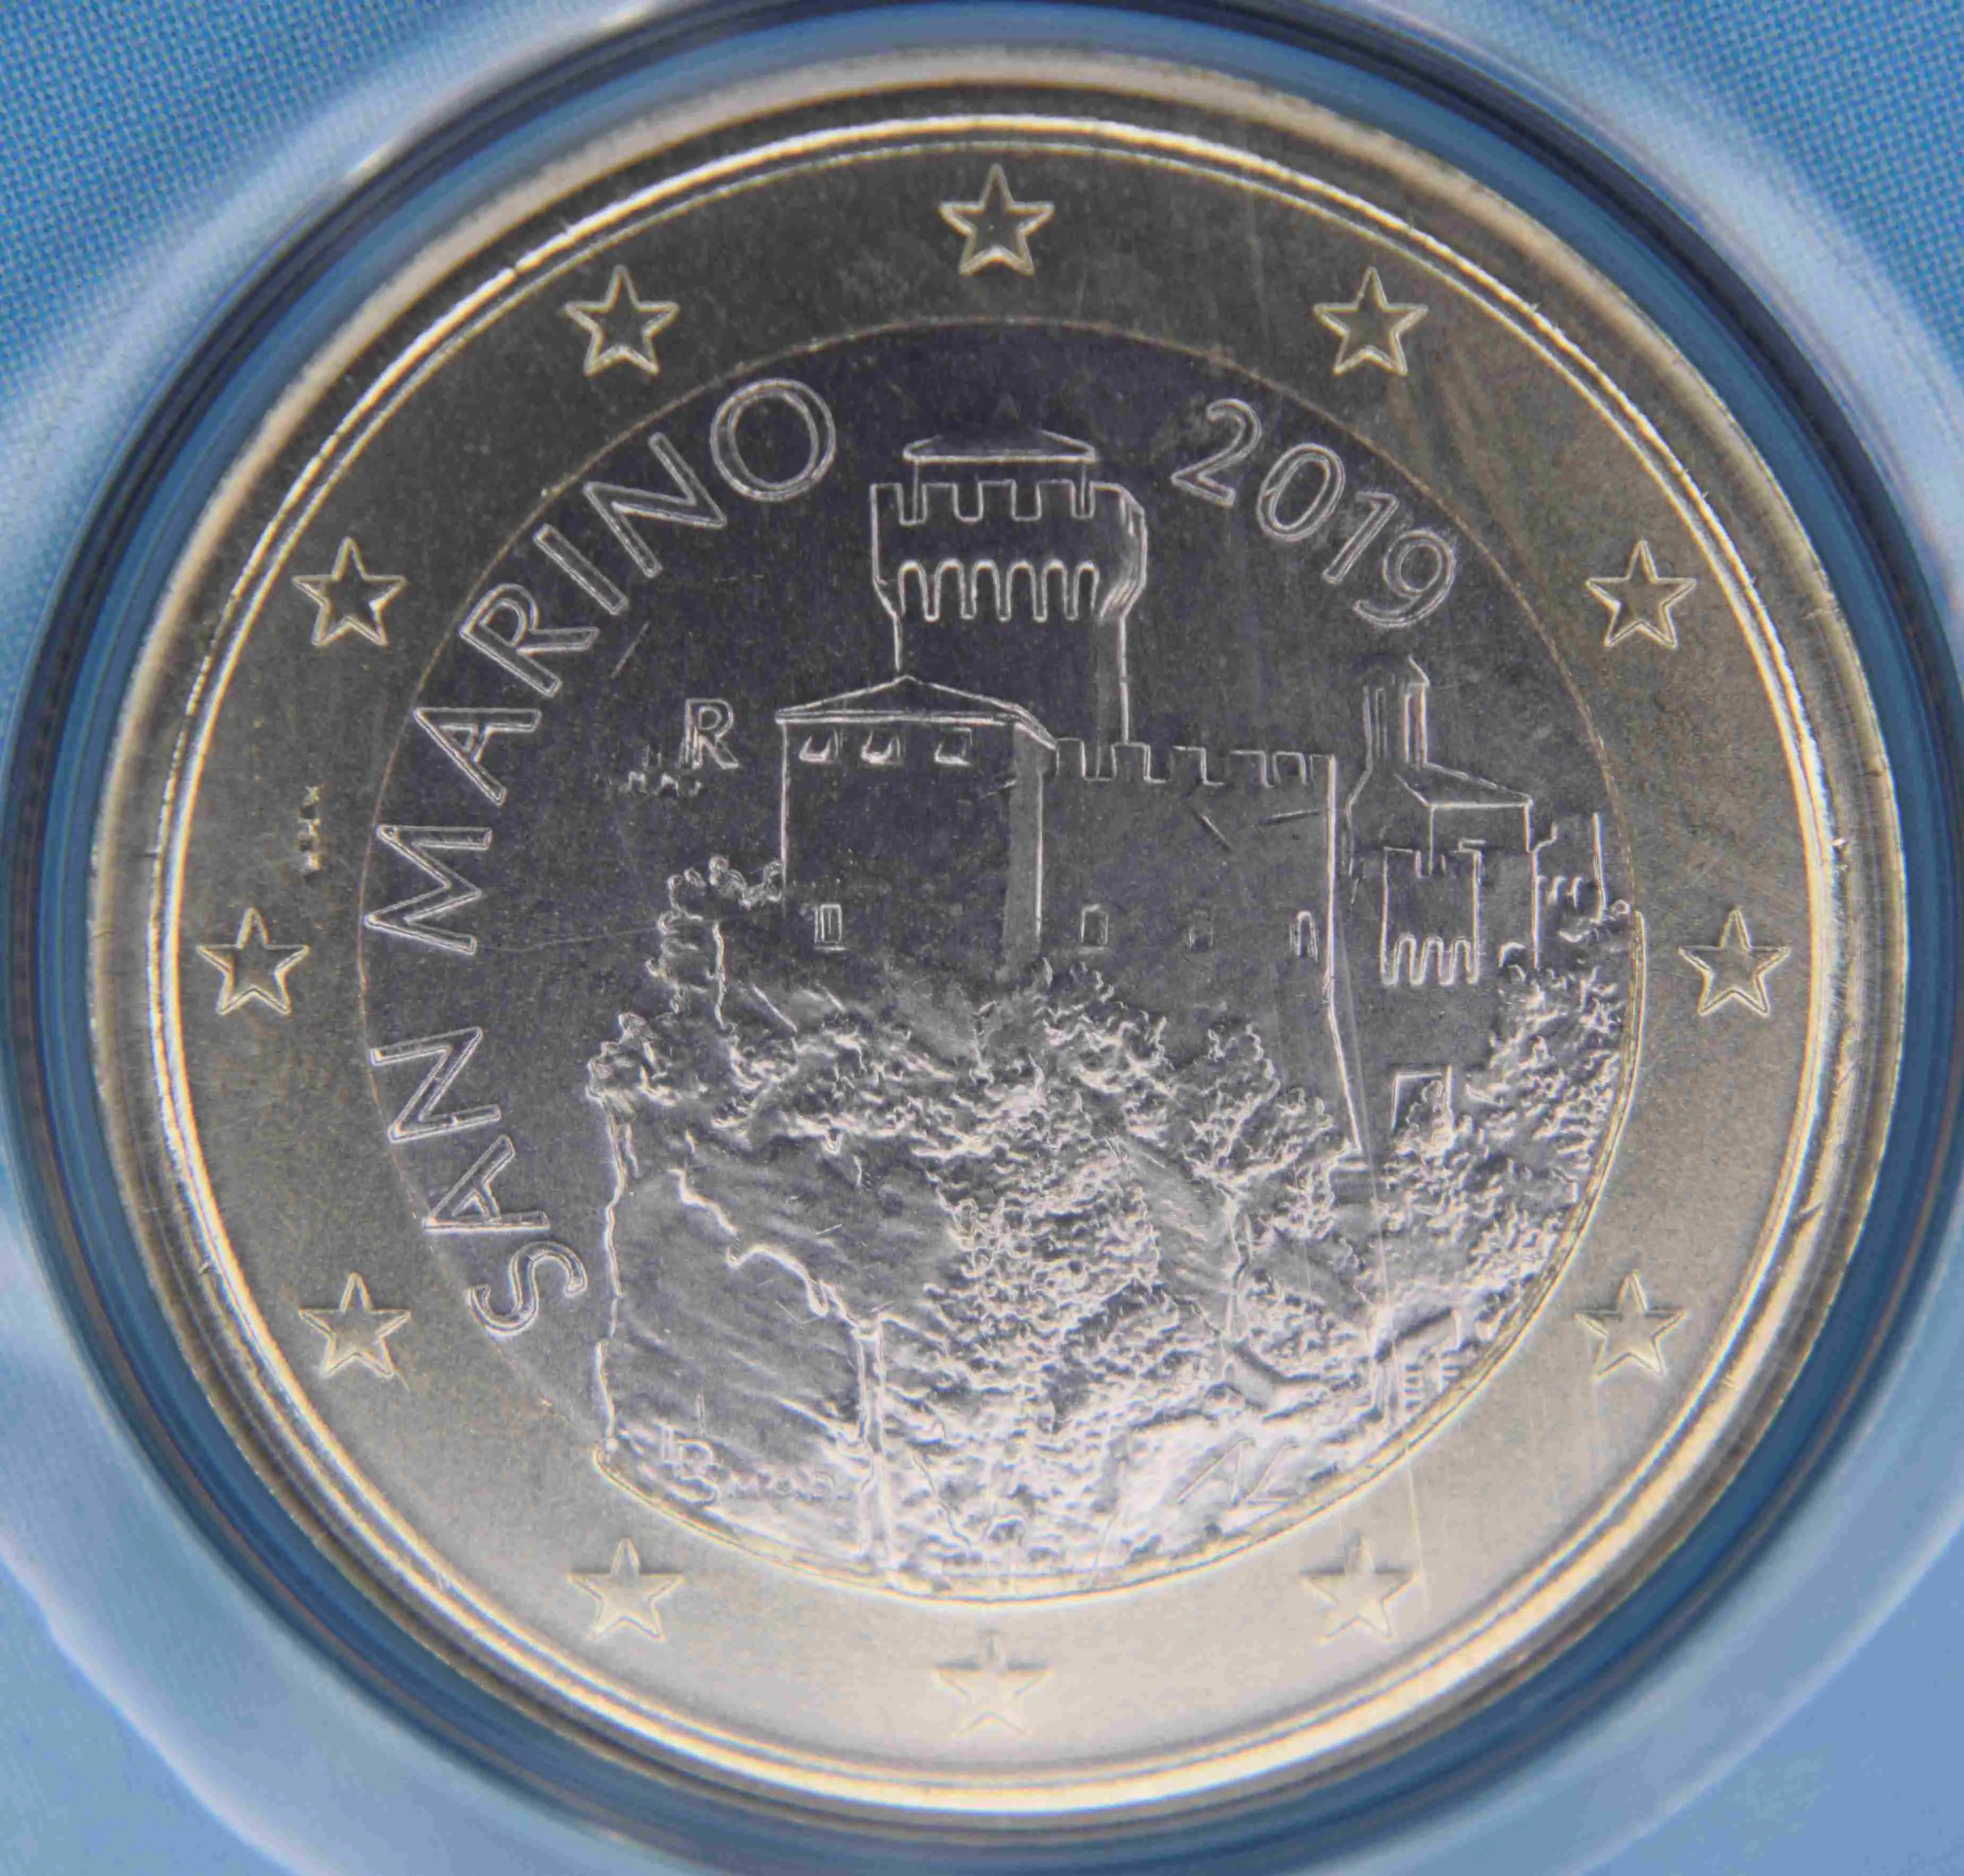 San Marino 1 Euro Münze 2019 - euro-muenzen.tv - Der Online Euromünzen